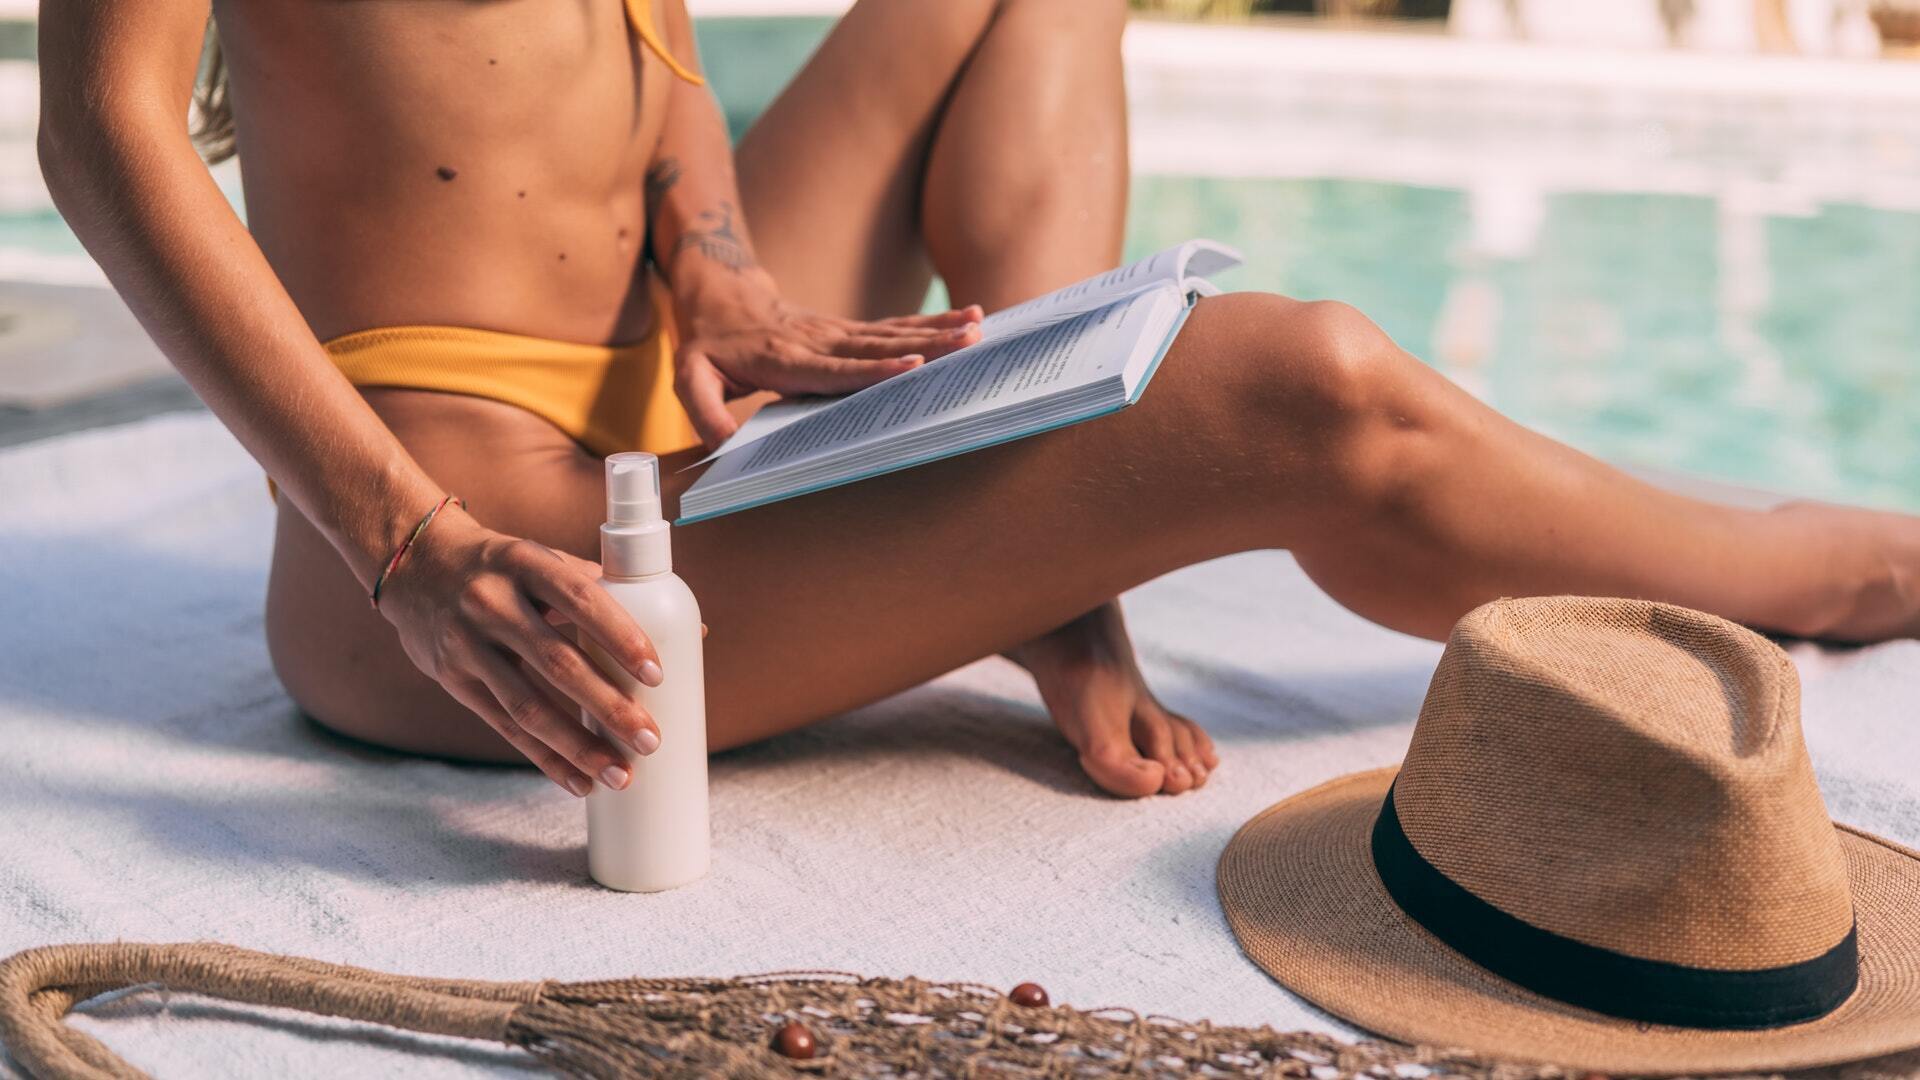 Солнцезащитный крем нужен не только на пляже и не только в солнечную погоду